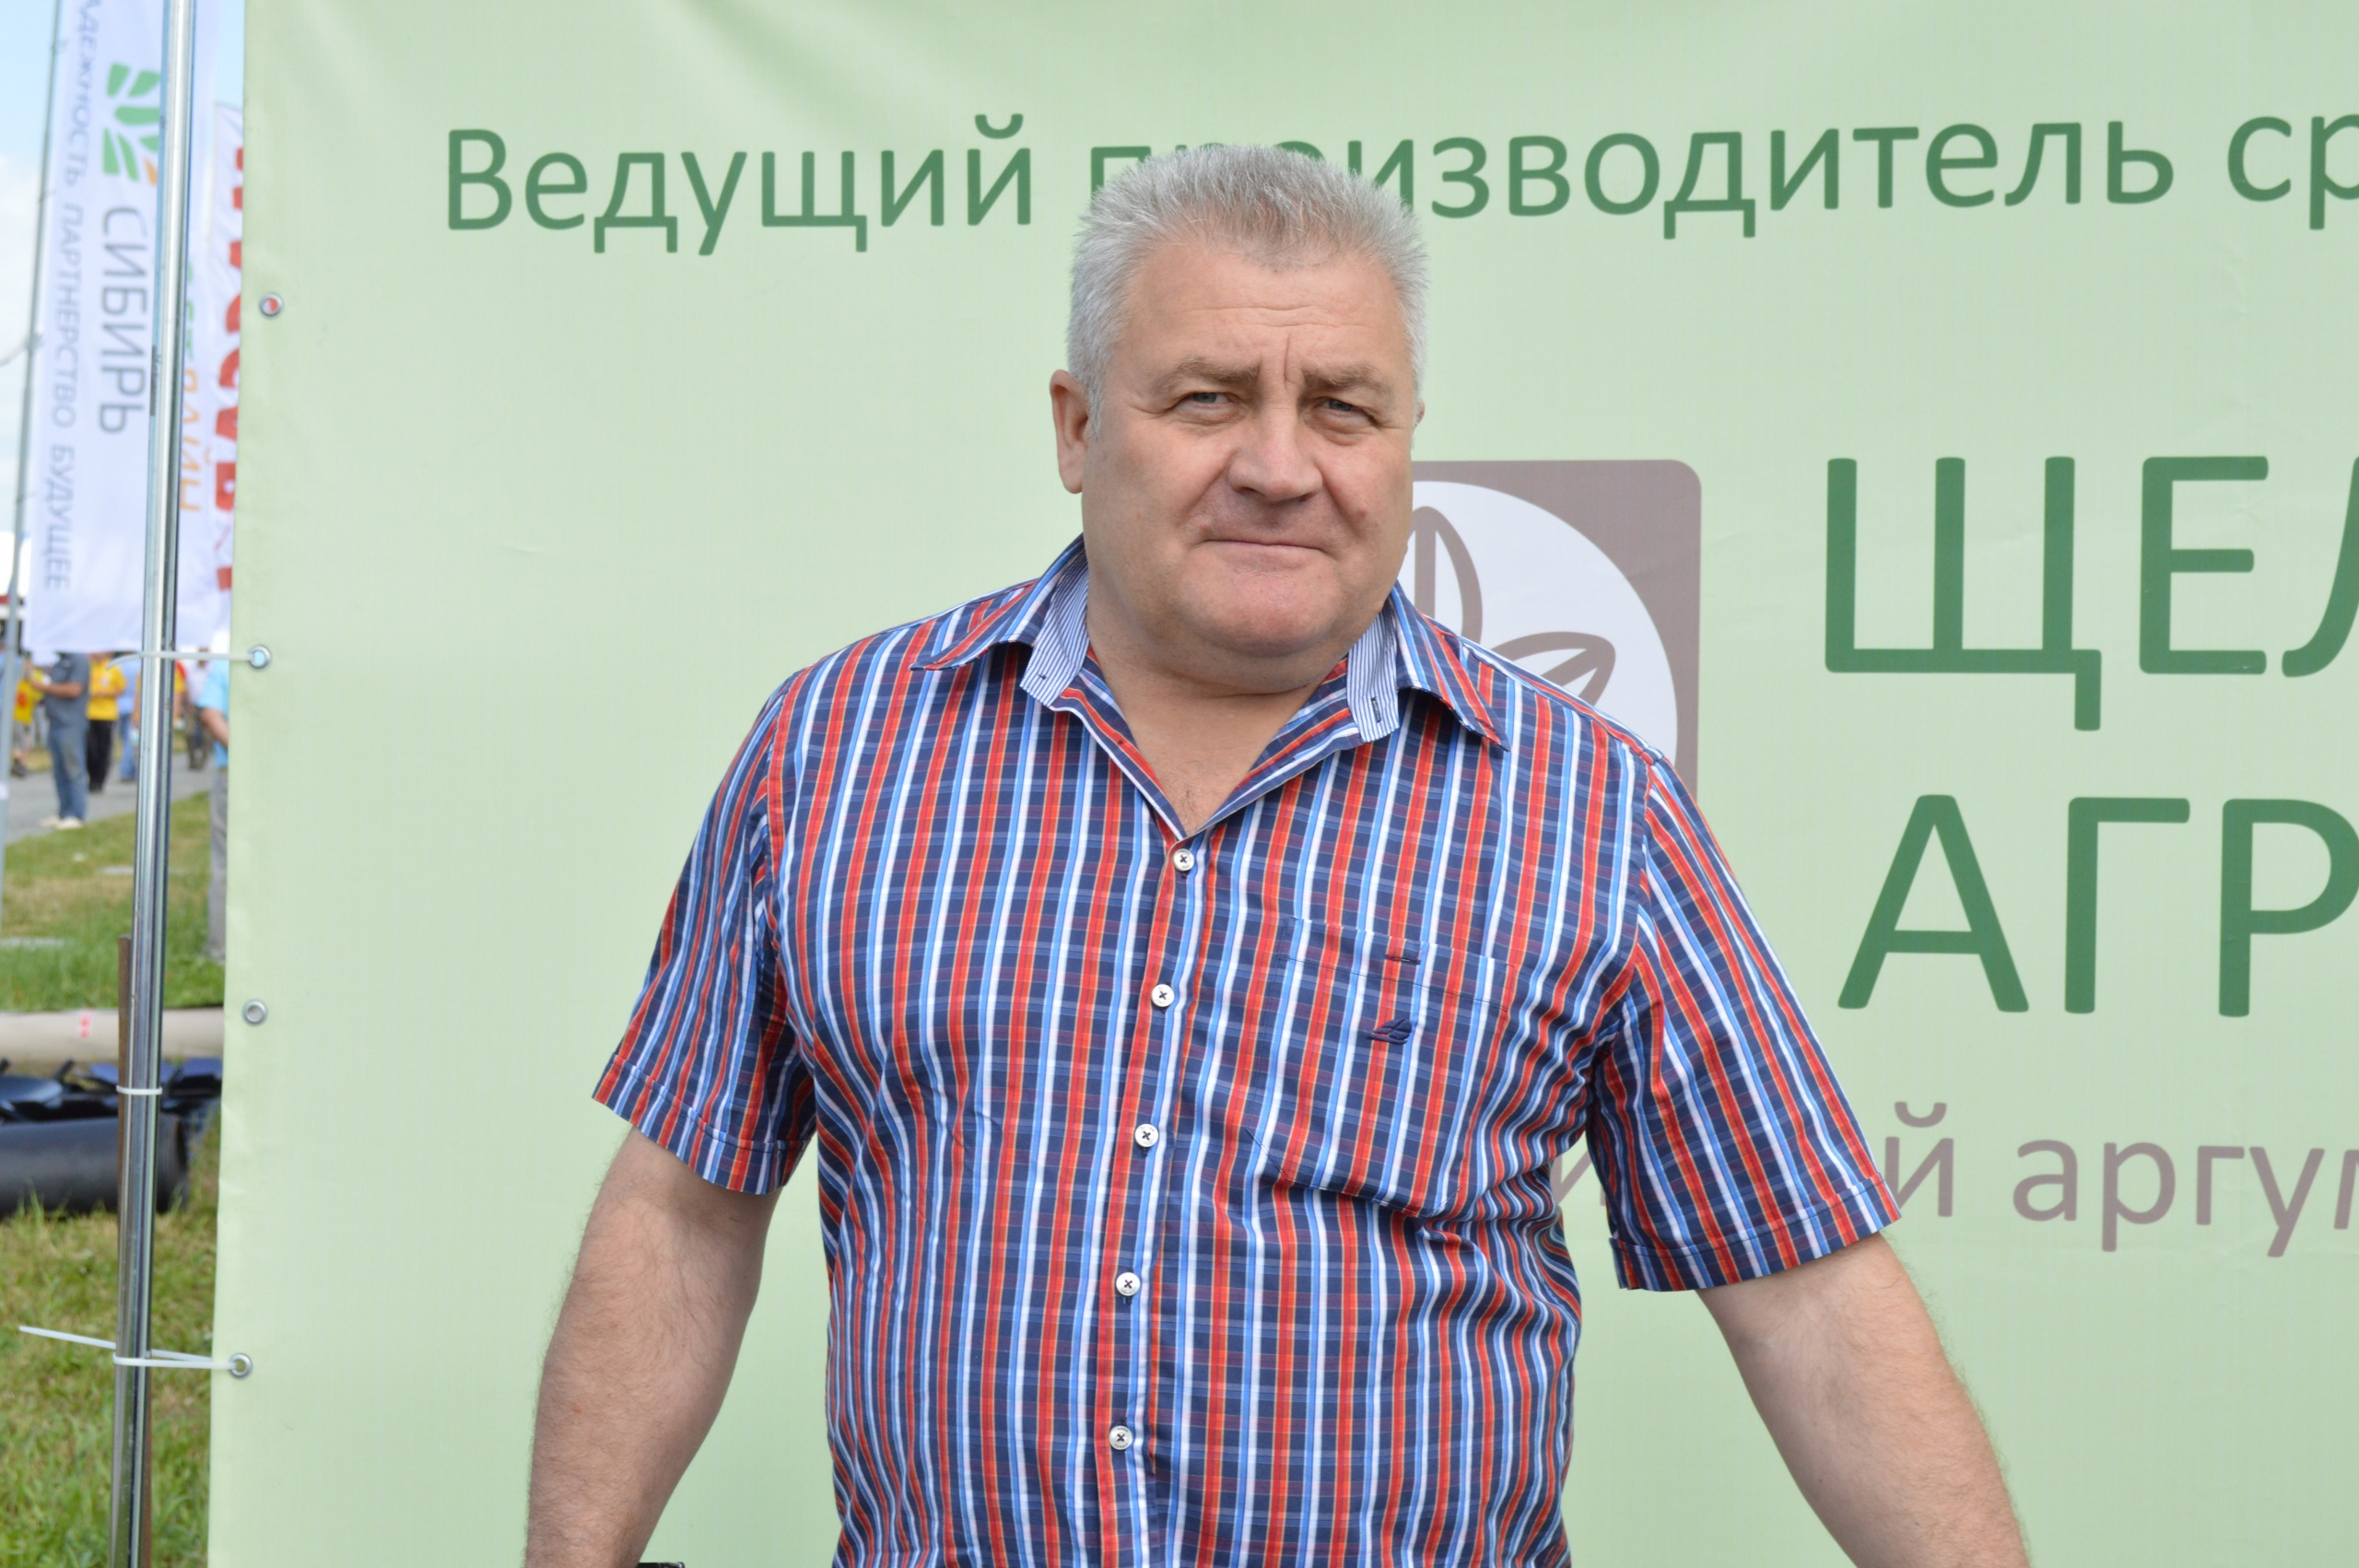 Сергей Горлов - известный алтайский фермер, глава двух хозяйств Косихинского района.jpg